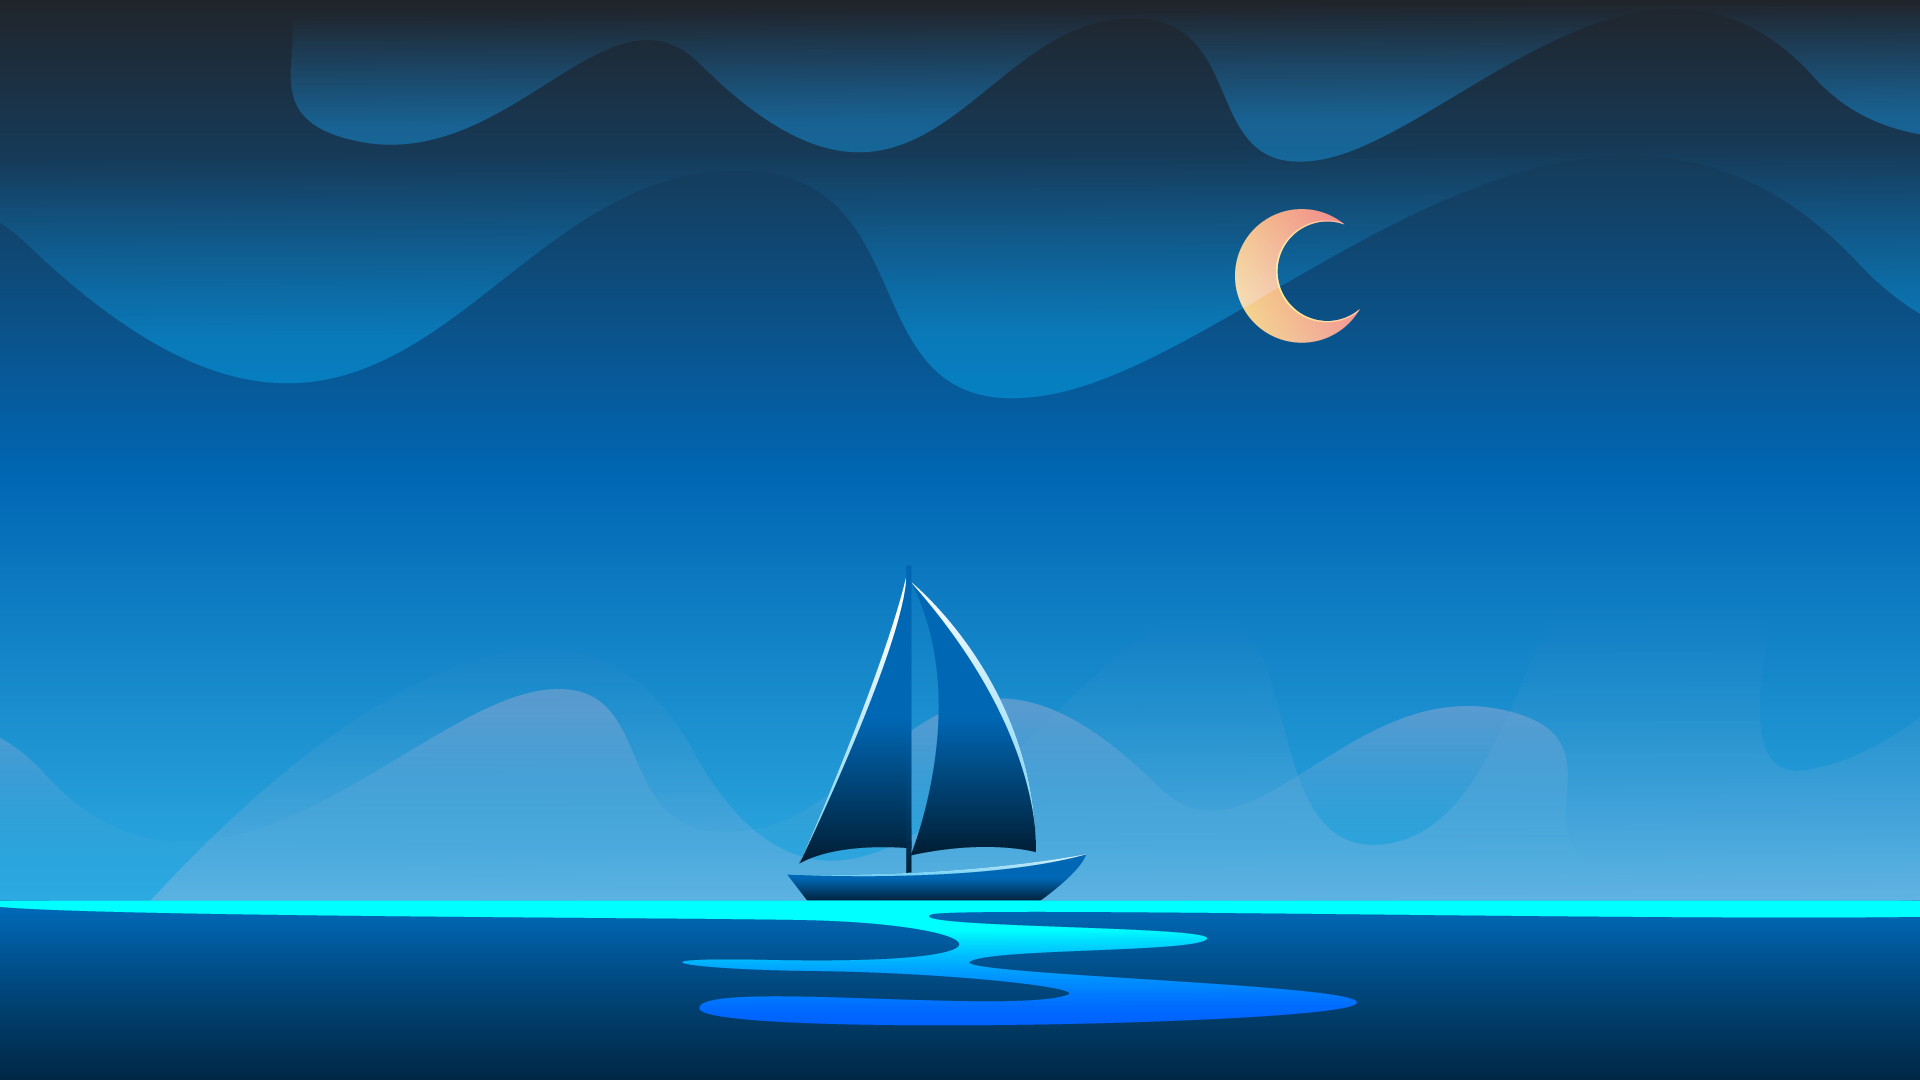 Desktop wallpaper 4k - Minimal Ocean Night